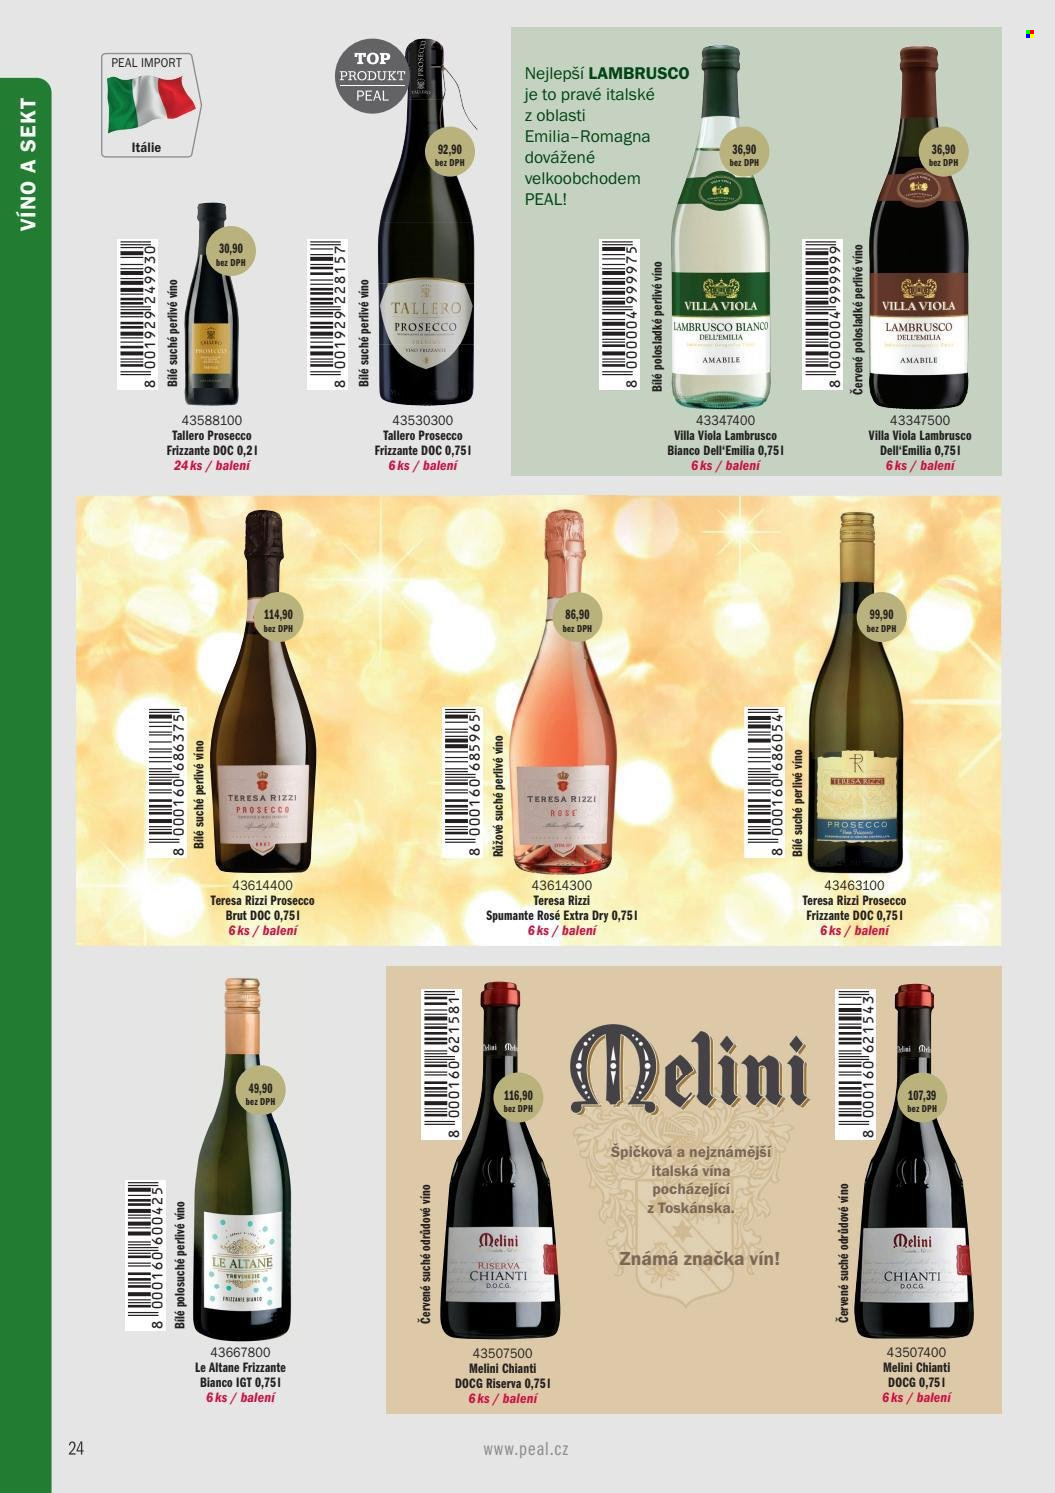 Leták PEAL - Produkty v akci - alkohol, červené víno, sekt, Chianti, Lambrusco, Prosecco, víno, Frizzante, Brut, perlivé víno. Strana 14.